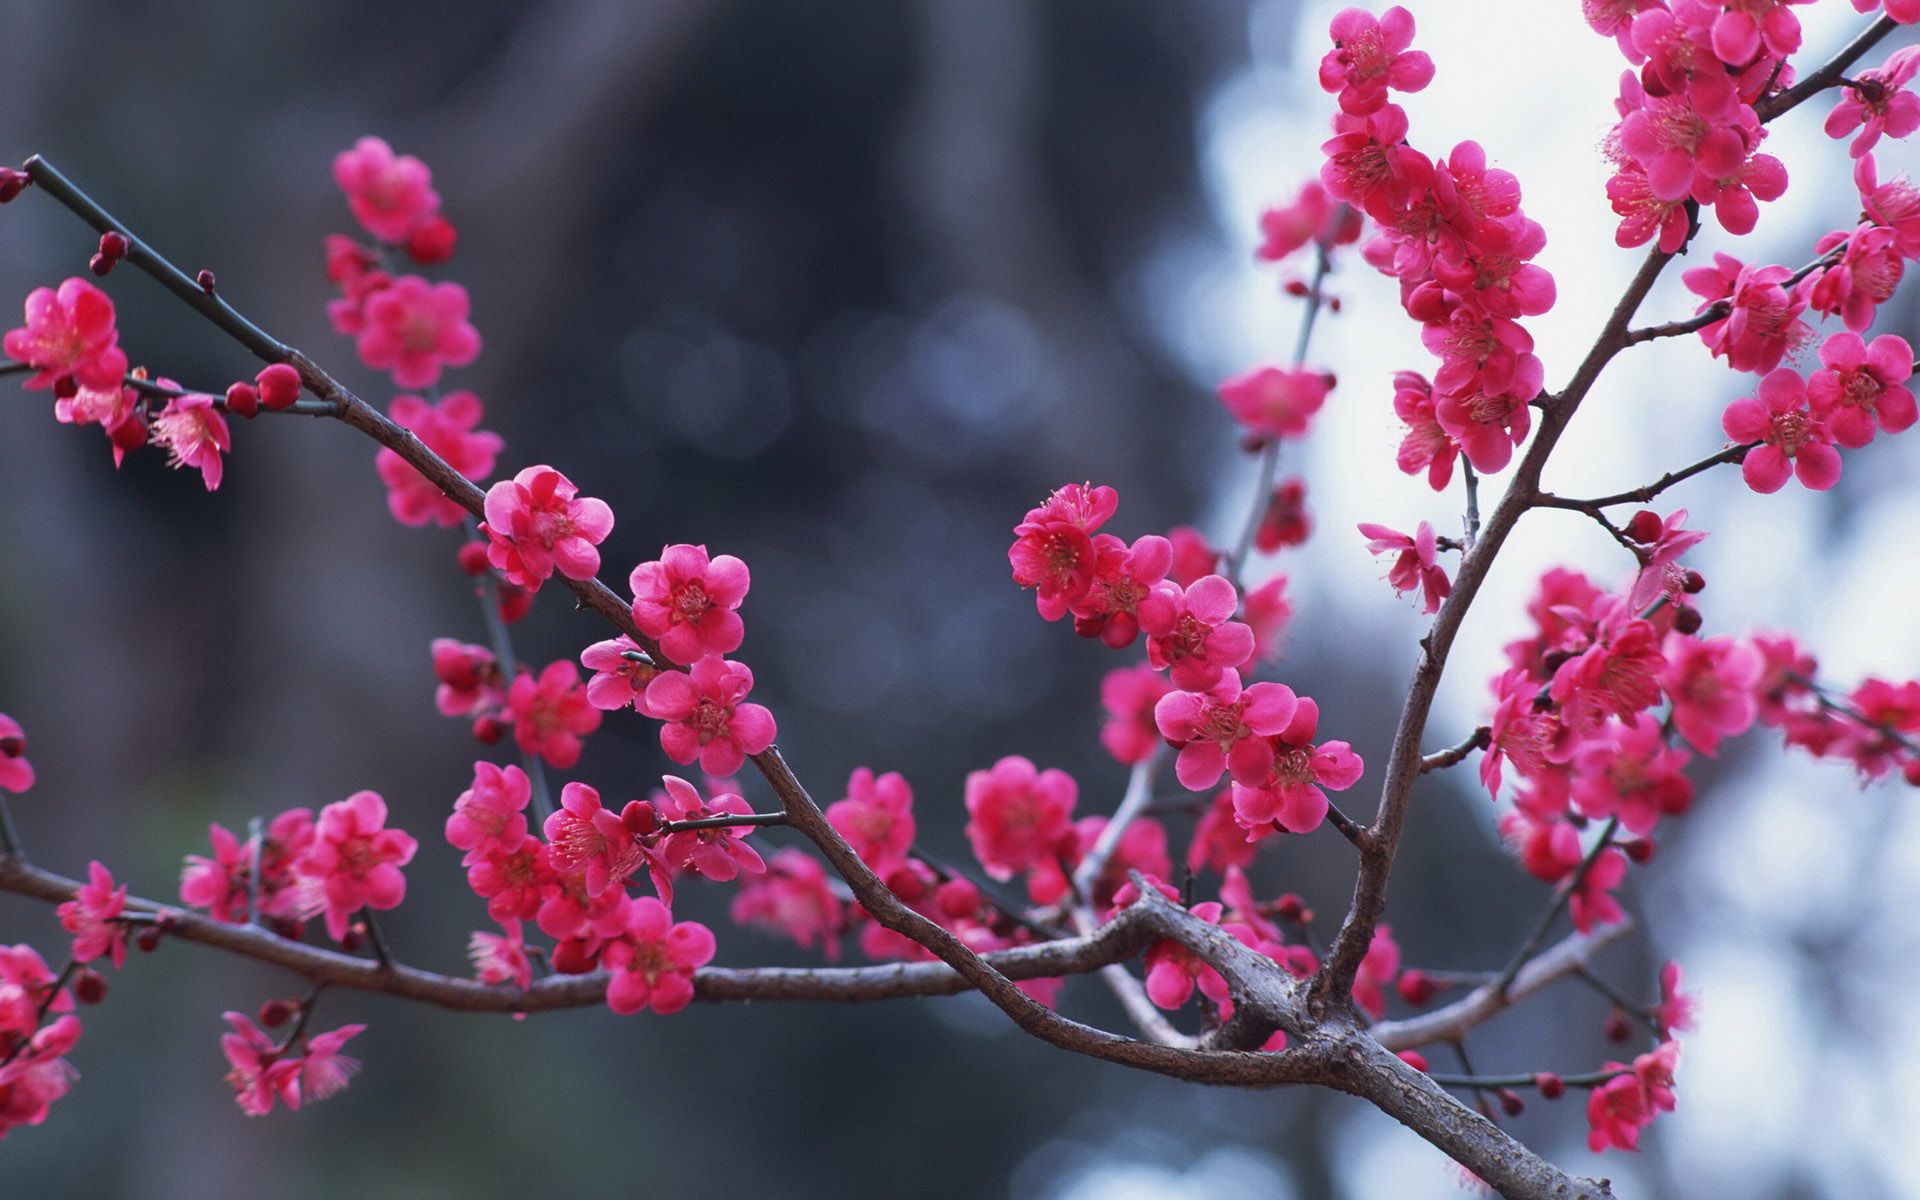 بکگراند فوق العاده زیبا از شکوفه های سرخابی رنگ 